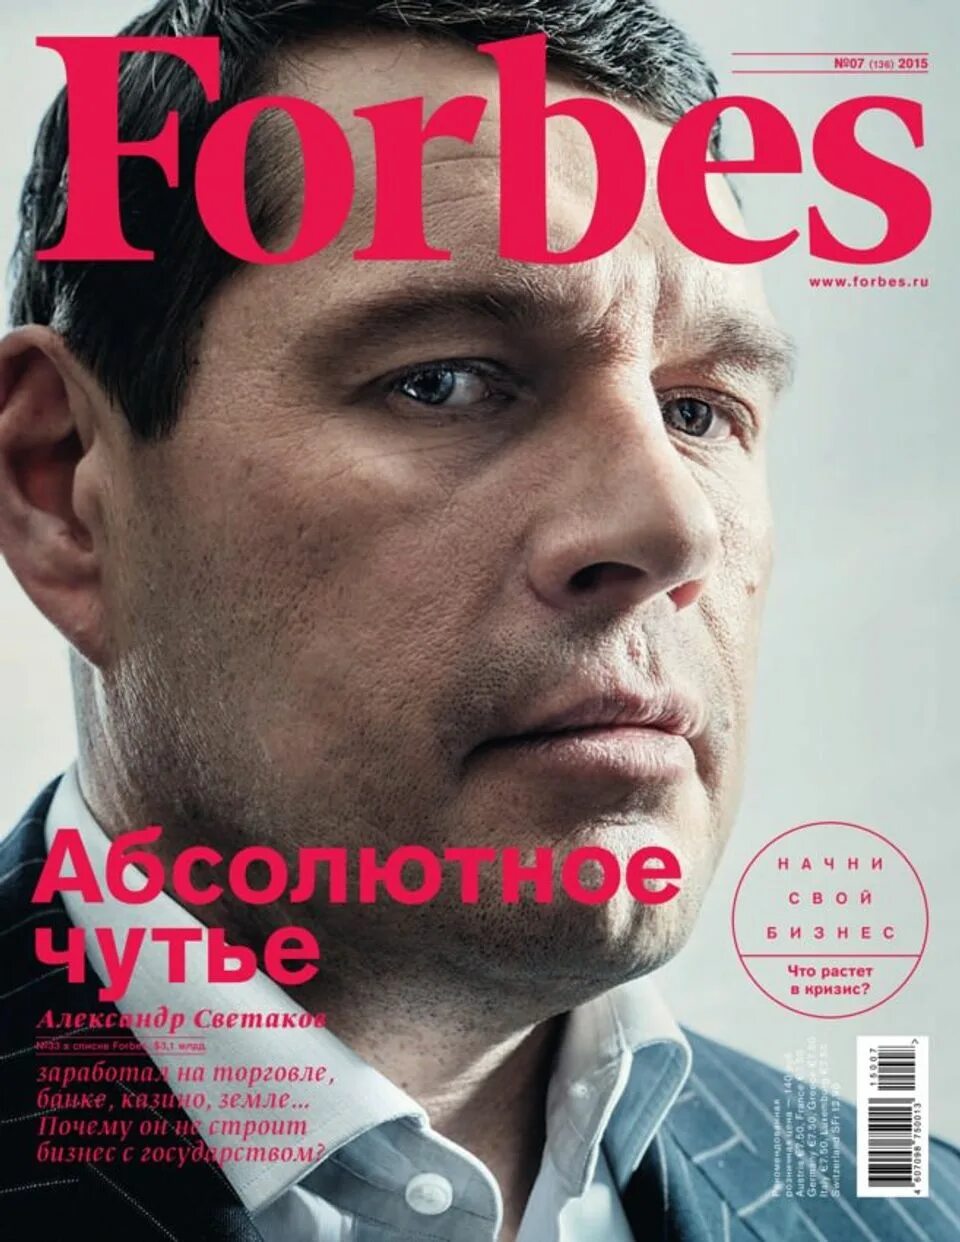 Forbes обложка. Обложка журнала Forbes. Обложка бизнес журнала. Журнал форбс.